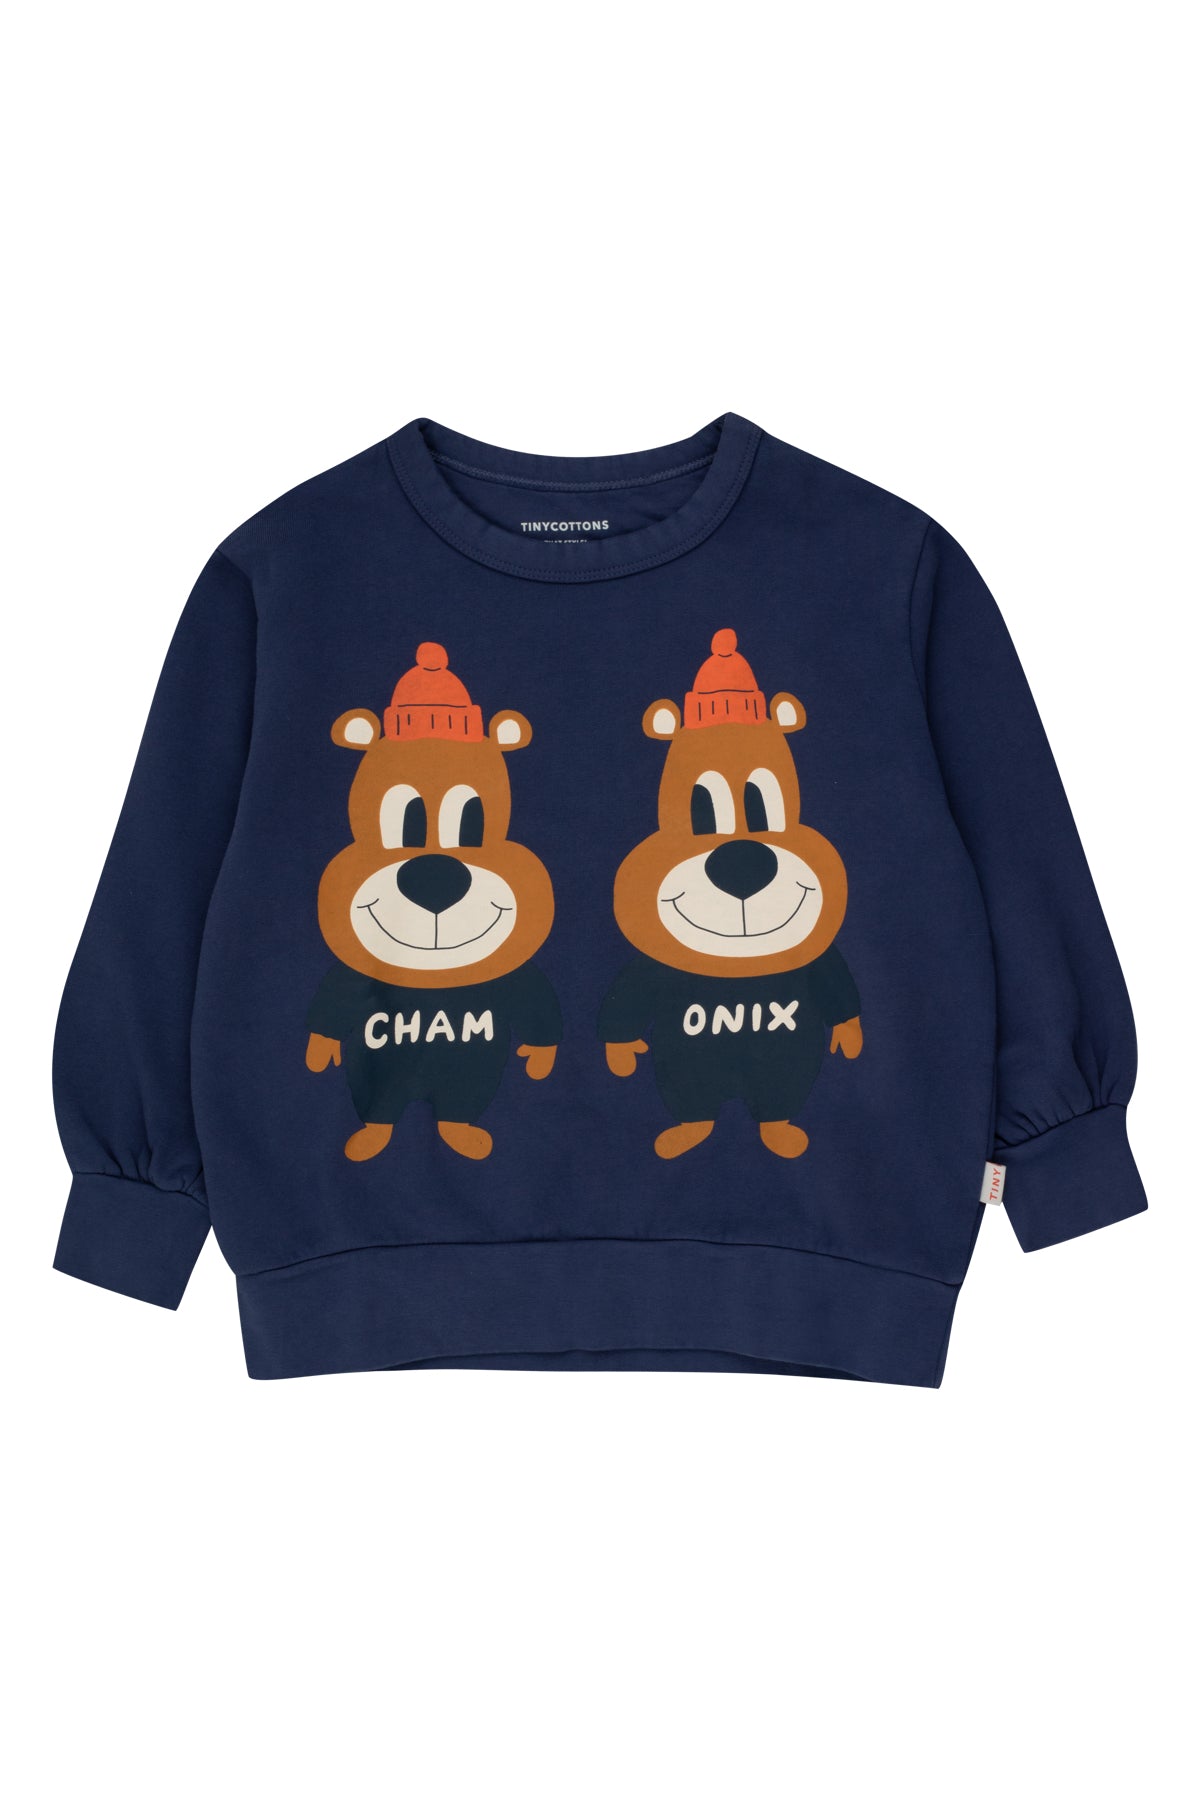 Tinycottons Chamonix Twins Sweatshirt